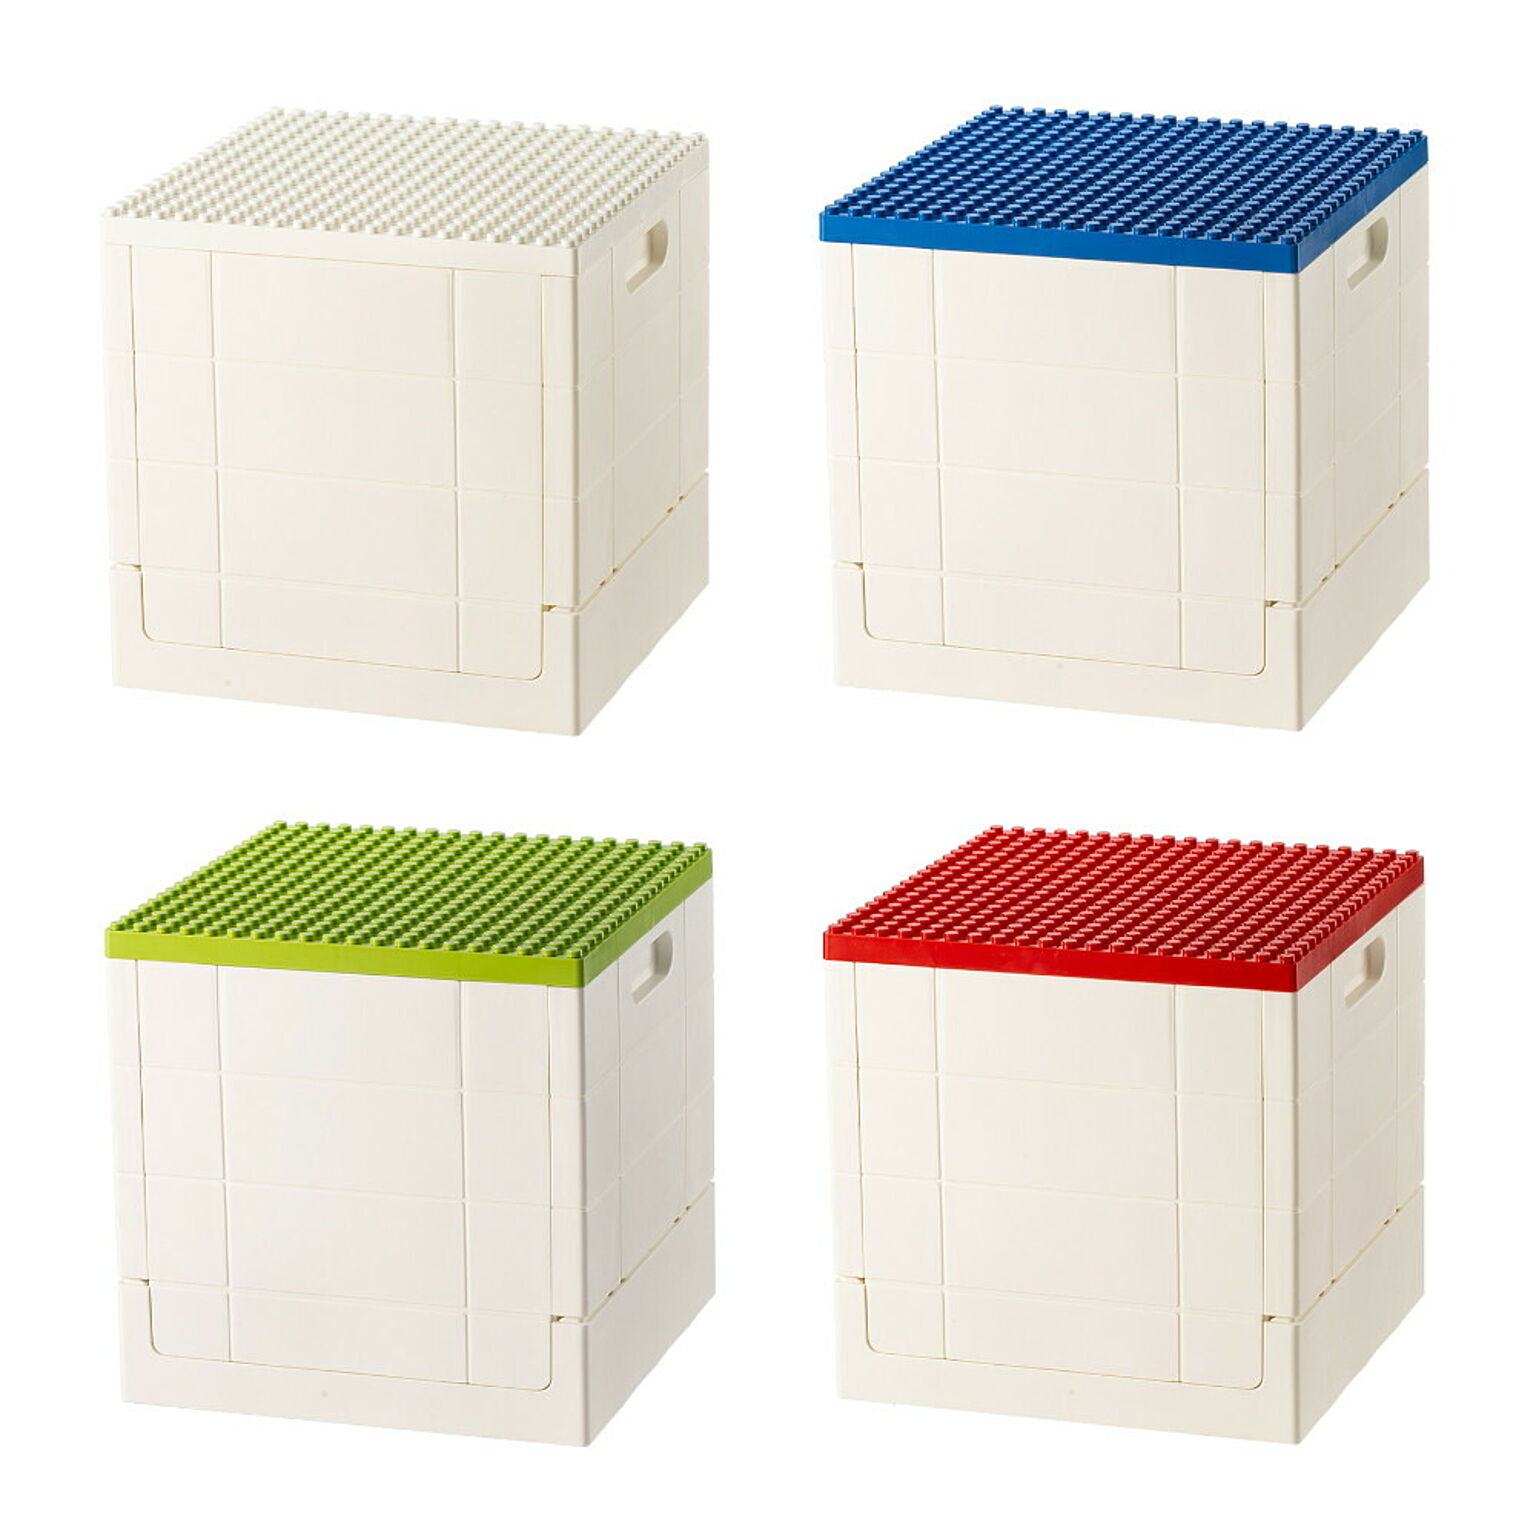 霜山 折りたたみ収納ボックス 4色セット ホワイト1、ブルー1、グリーン1、レッド1